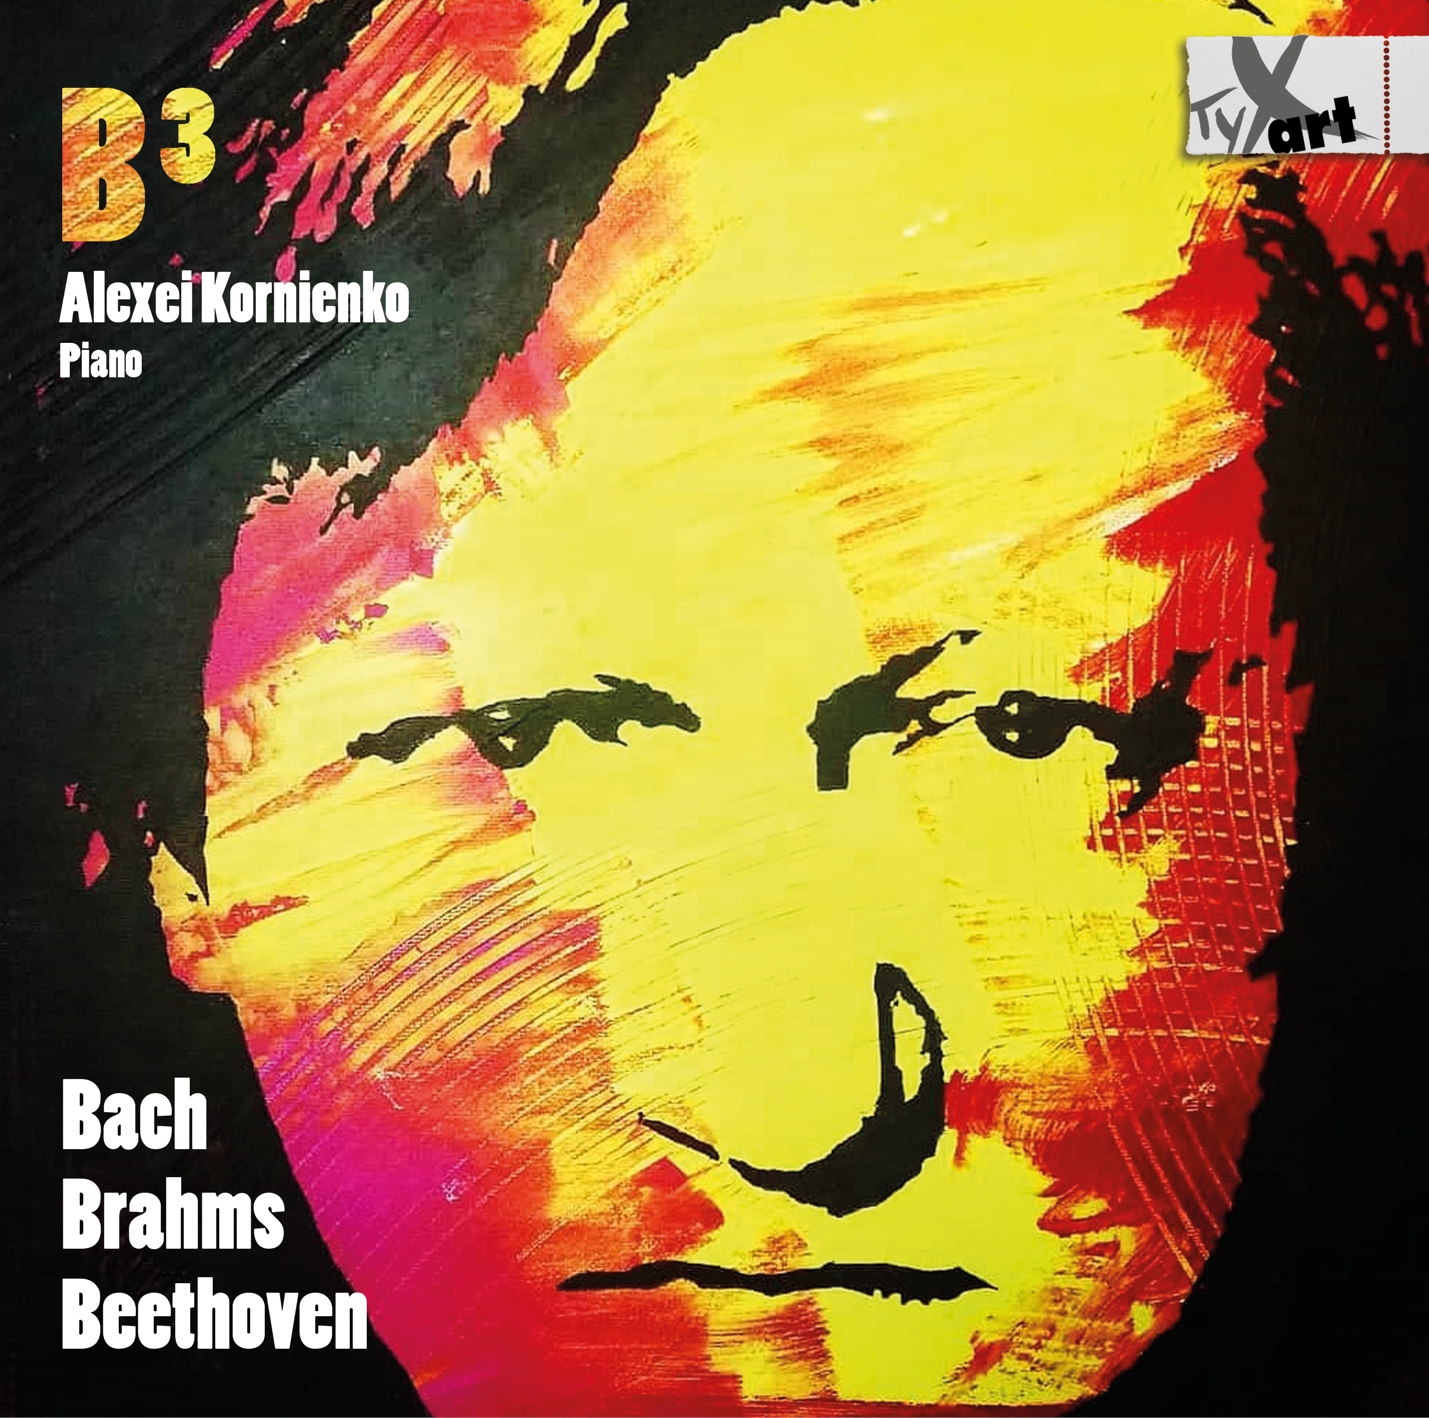 B3 - Bach Brahms Beethoven - Alexei Kornienko, piano